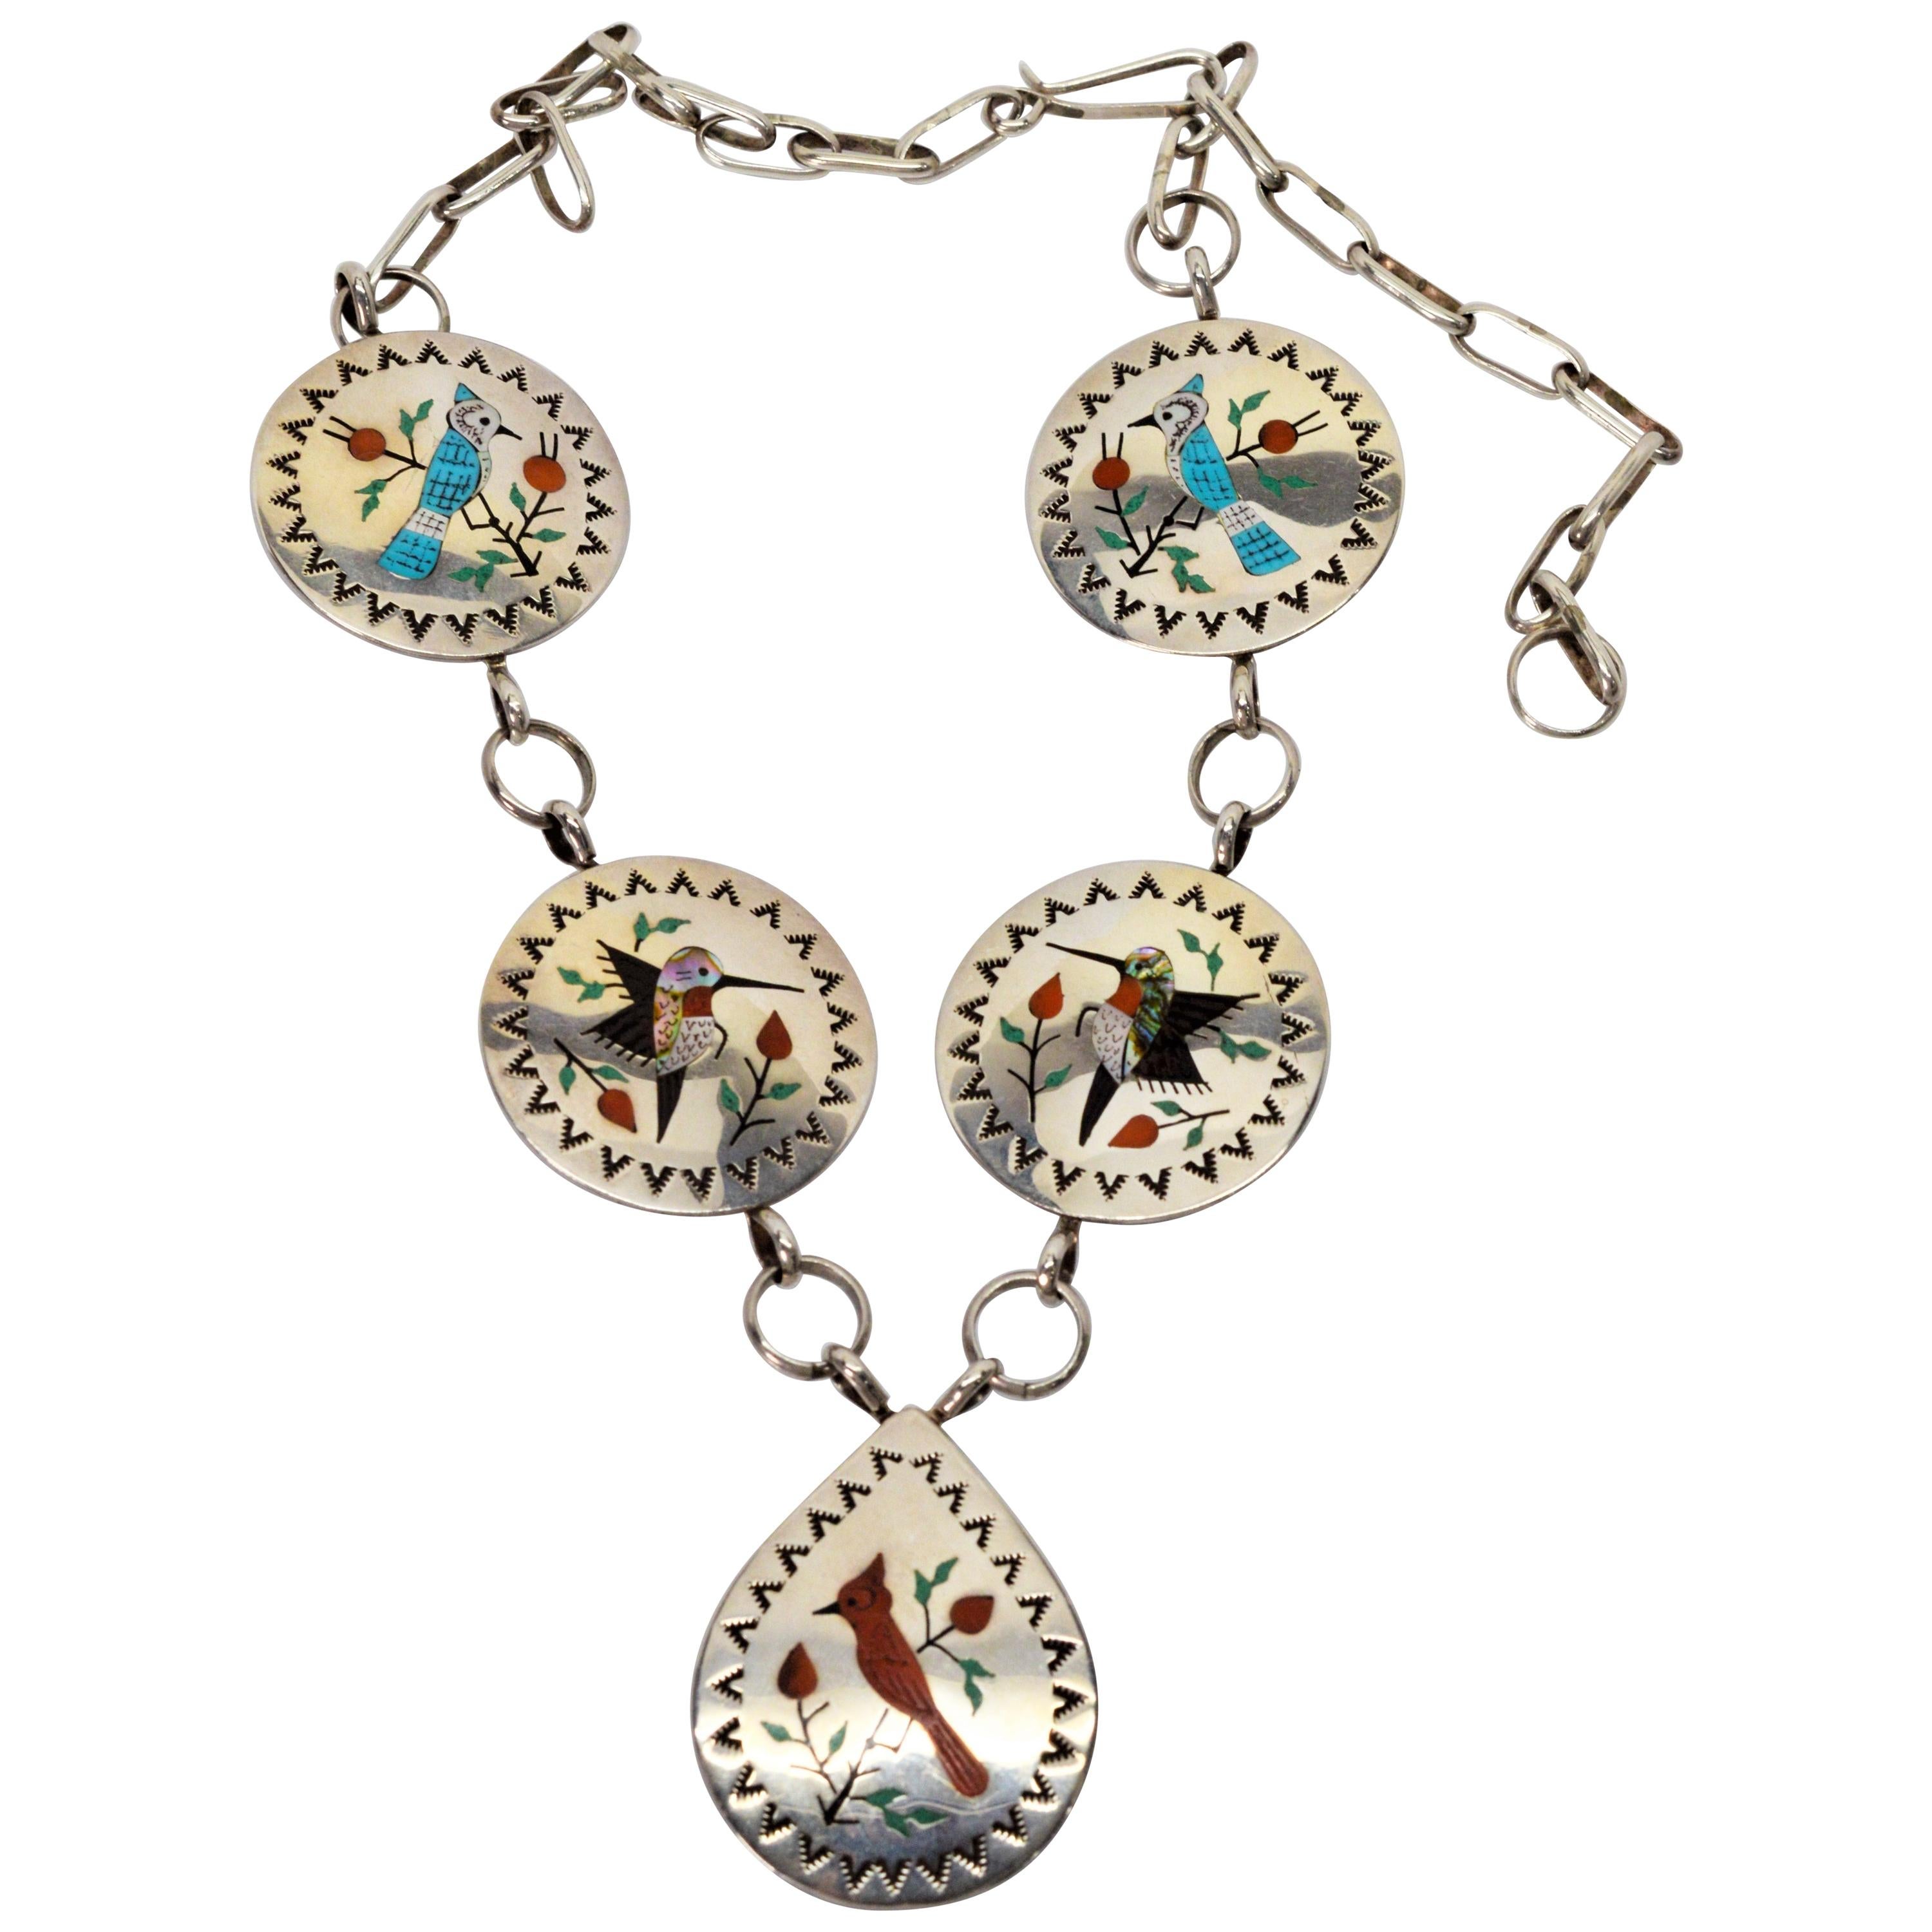 8 Vintage Native American Thunderbird Pendants Silver Tone Metal Navajo Necklace 